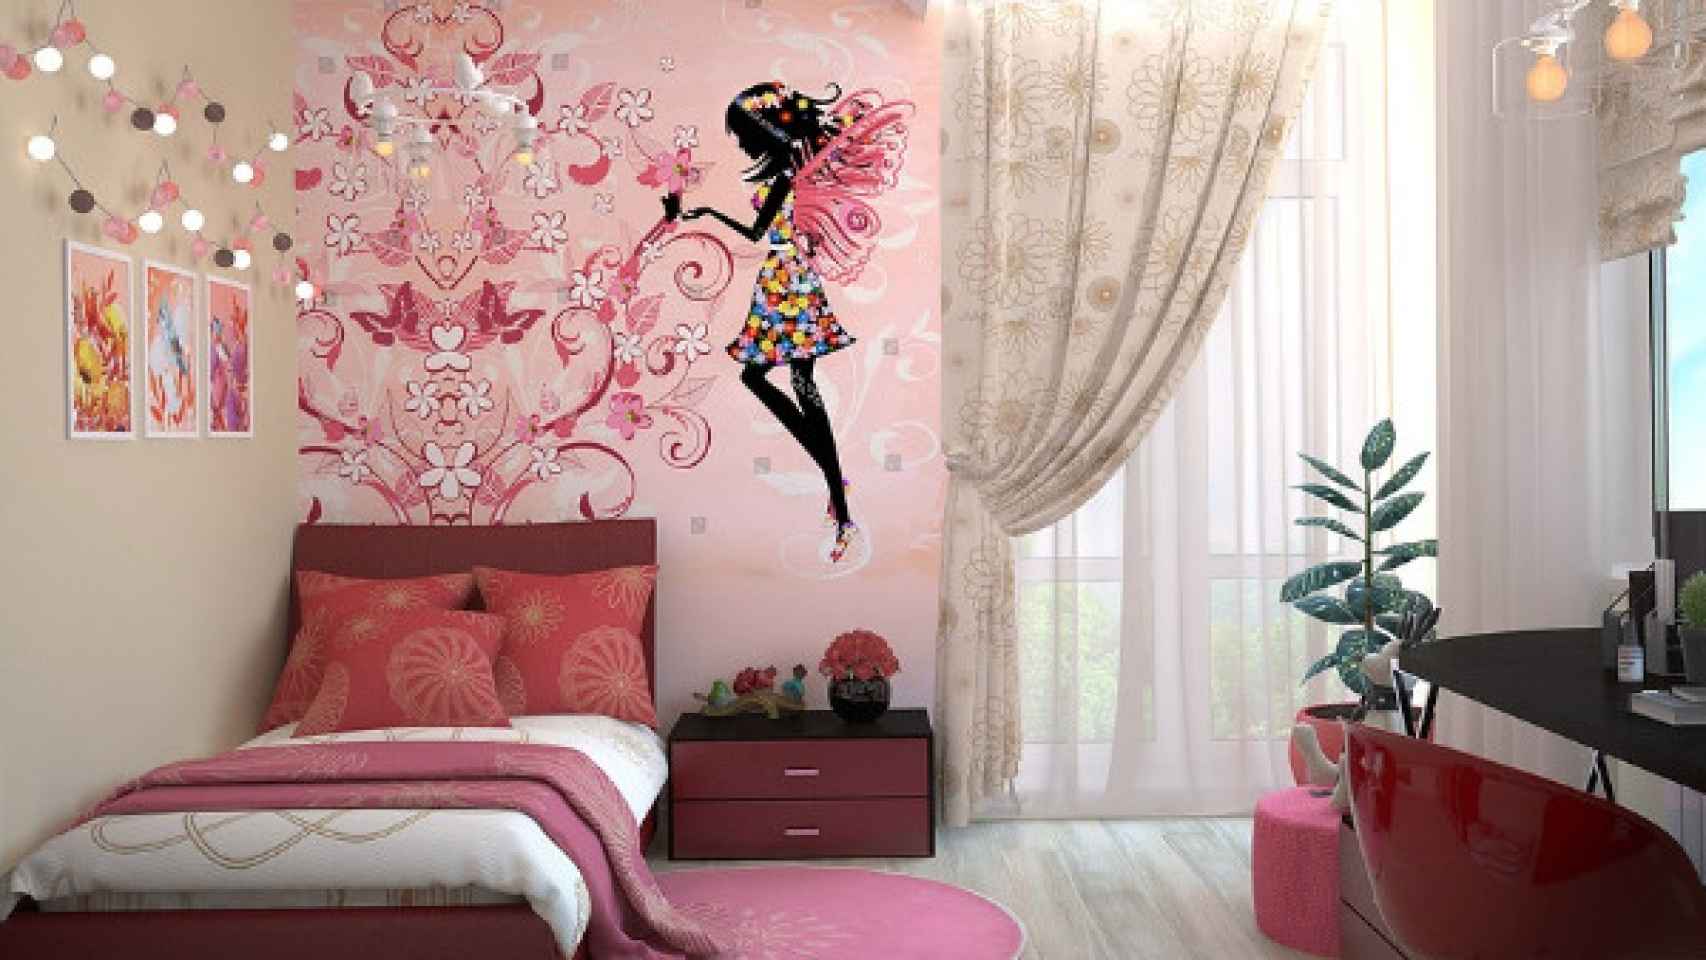 Una foto de una habitación de un niño decorada con un vinilo